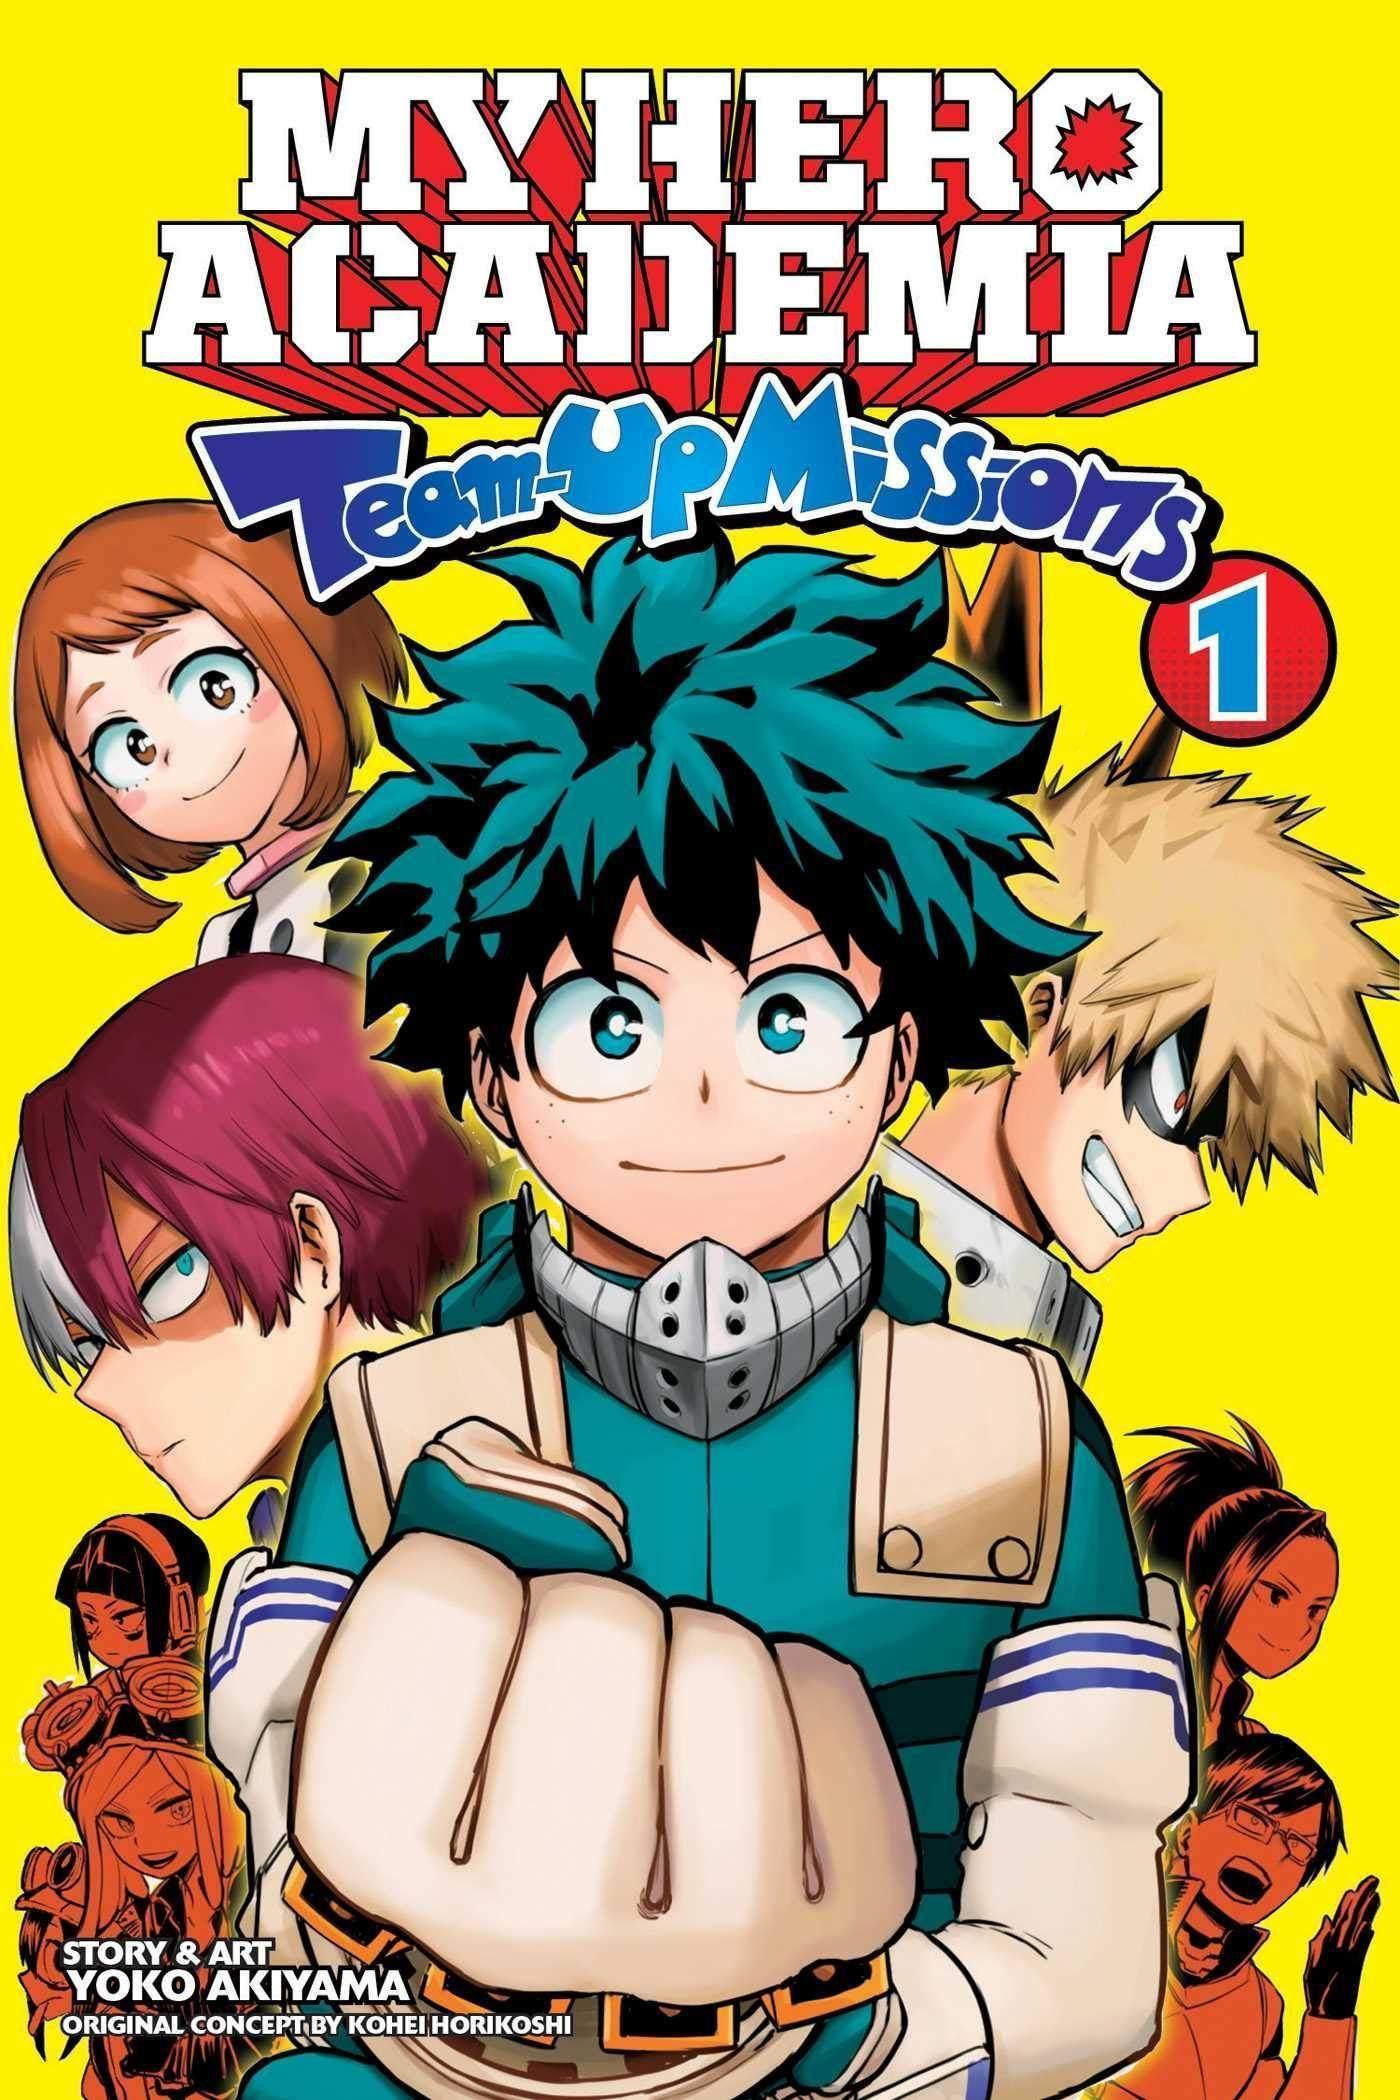 My Hero Academia: Team-Up Missions (Manga) Vol. 1 - Tankobonbon